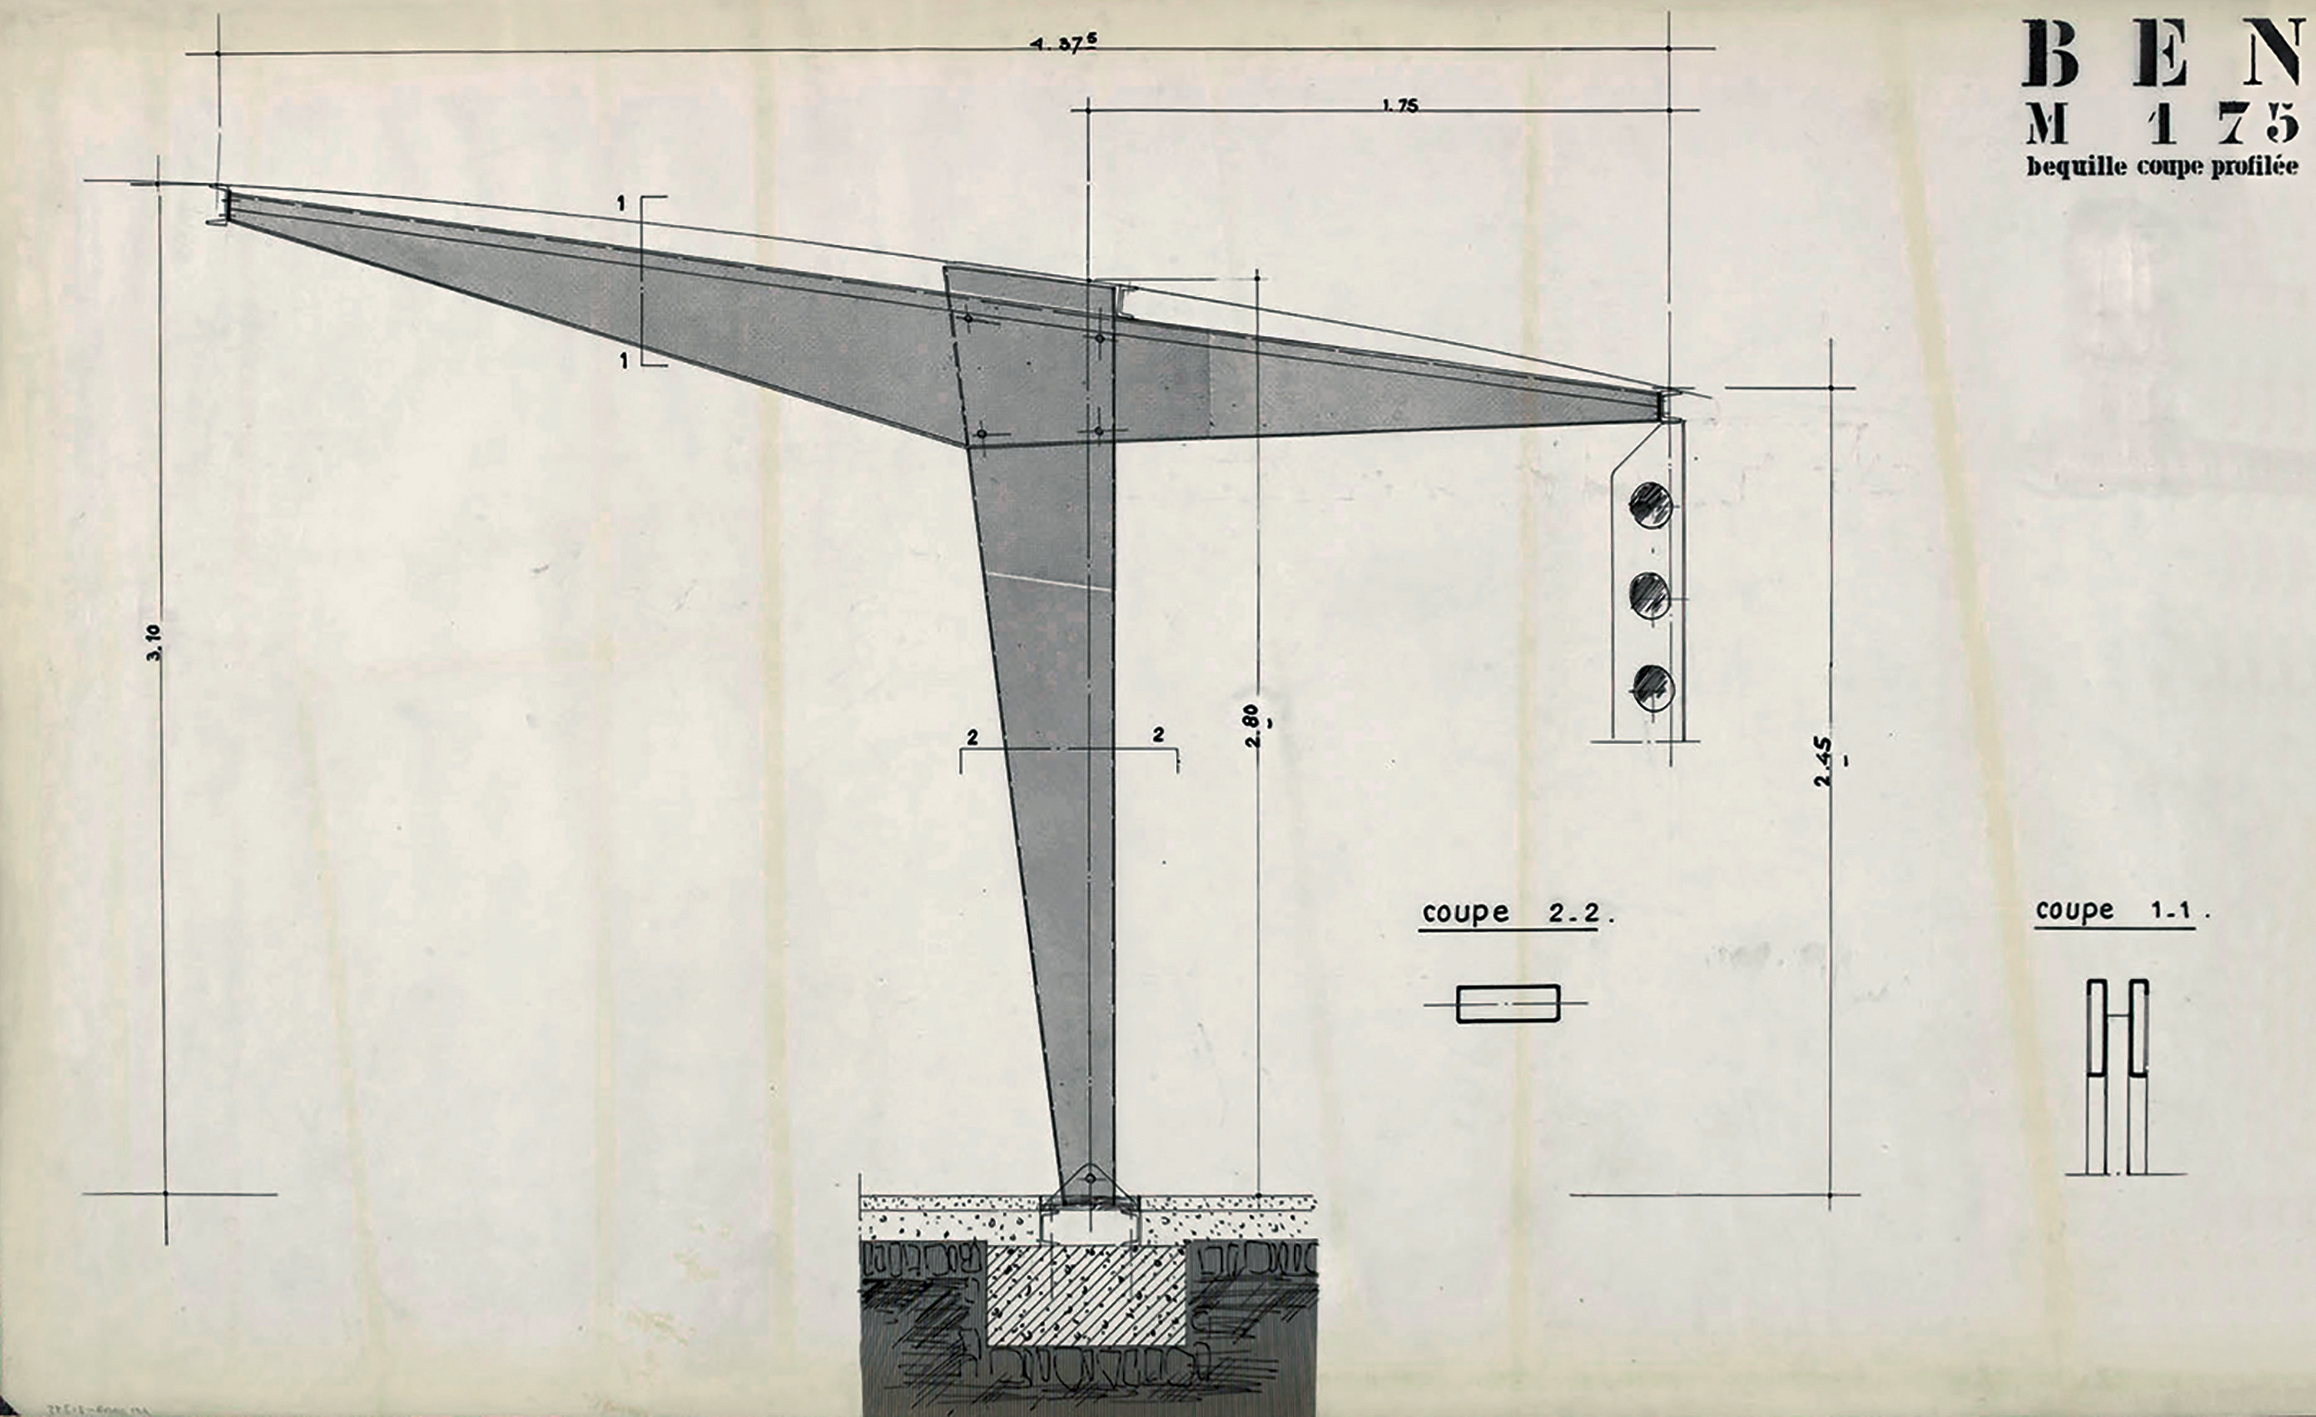 Les Constructions Jean Prouvé. « Béquille coupe profilée » pour l’école BEN M175 (Bâtiment Éducation Nationale trame 1m75), c. 1957.